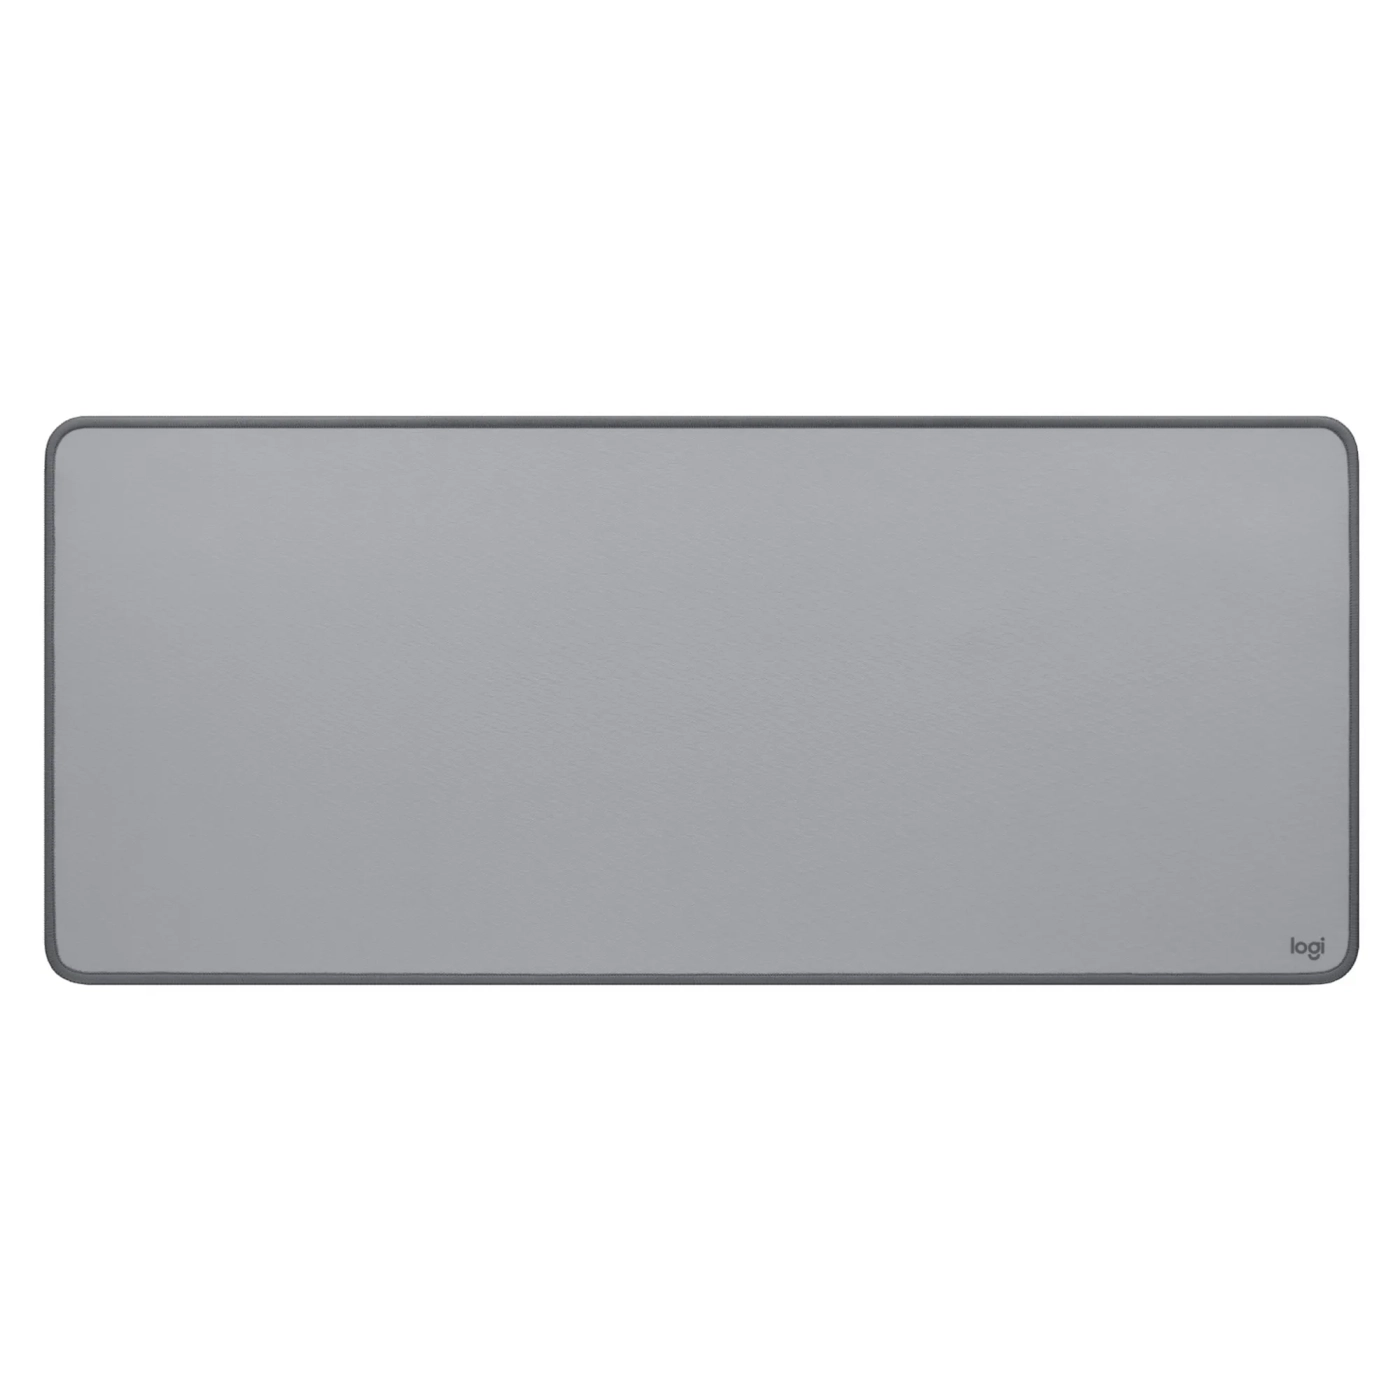 Купить Игровая поверхность Logitech Desk Mat Studio Series Mid Grey (956-000052) - фото 1